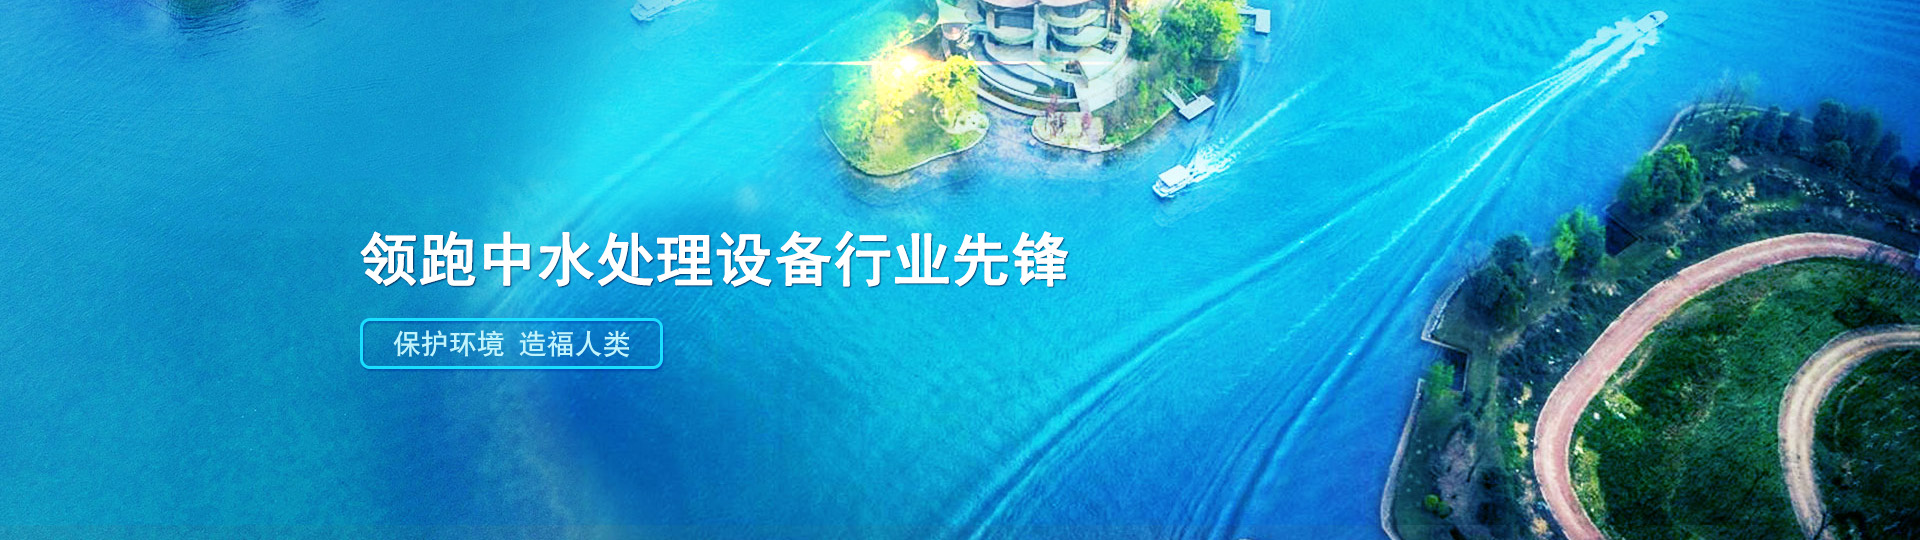 贵州舟达环保科技公司